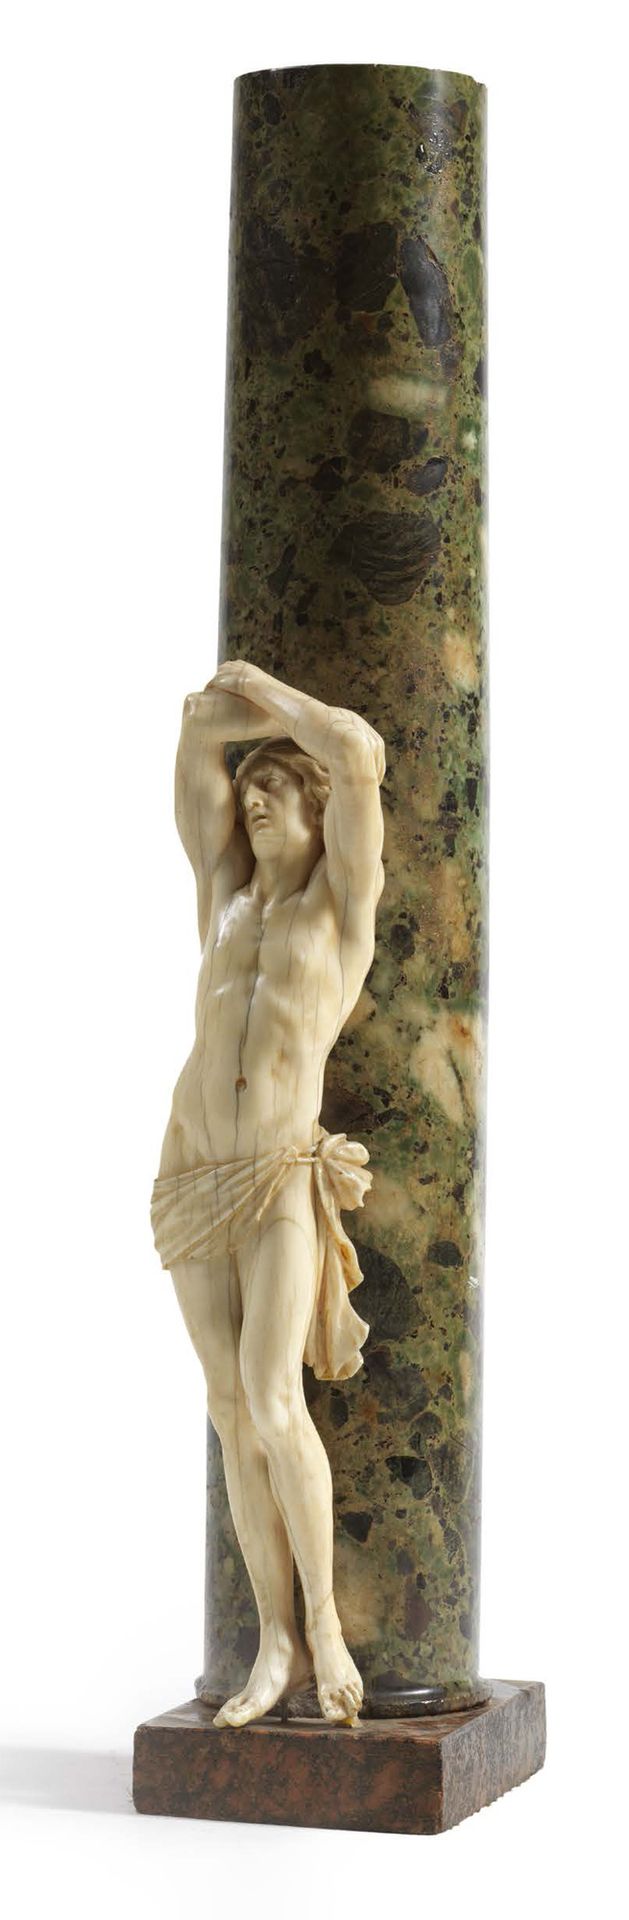 Null 雕刻的象牙圣塞巴斯蒂安。他靠在柱子上，微微扭动着身子，左臀上系着一条短腰带，双手交叉举过头顶。
南德或北意大利，18世纪（小事故和修复）。
靠着古绿色&hellip;